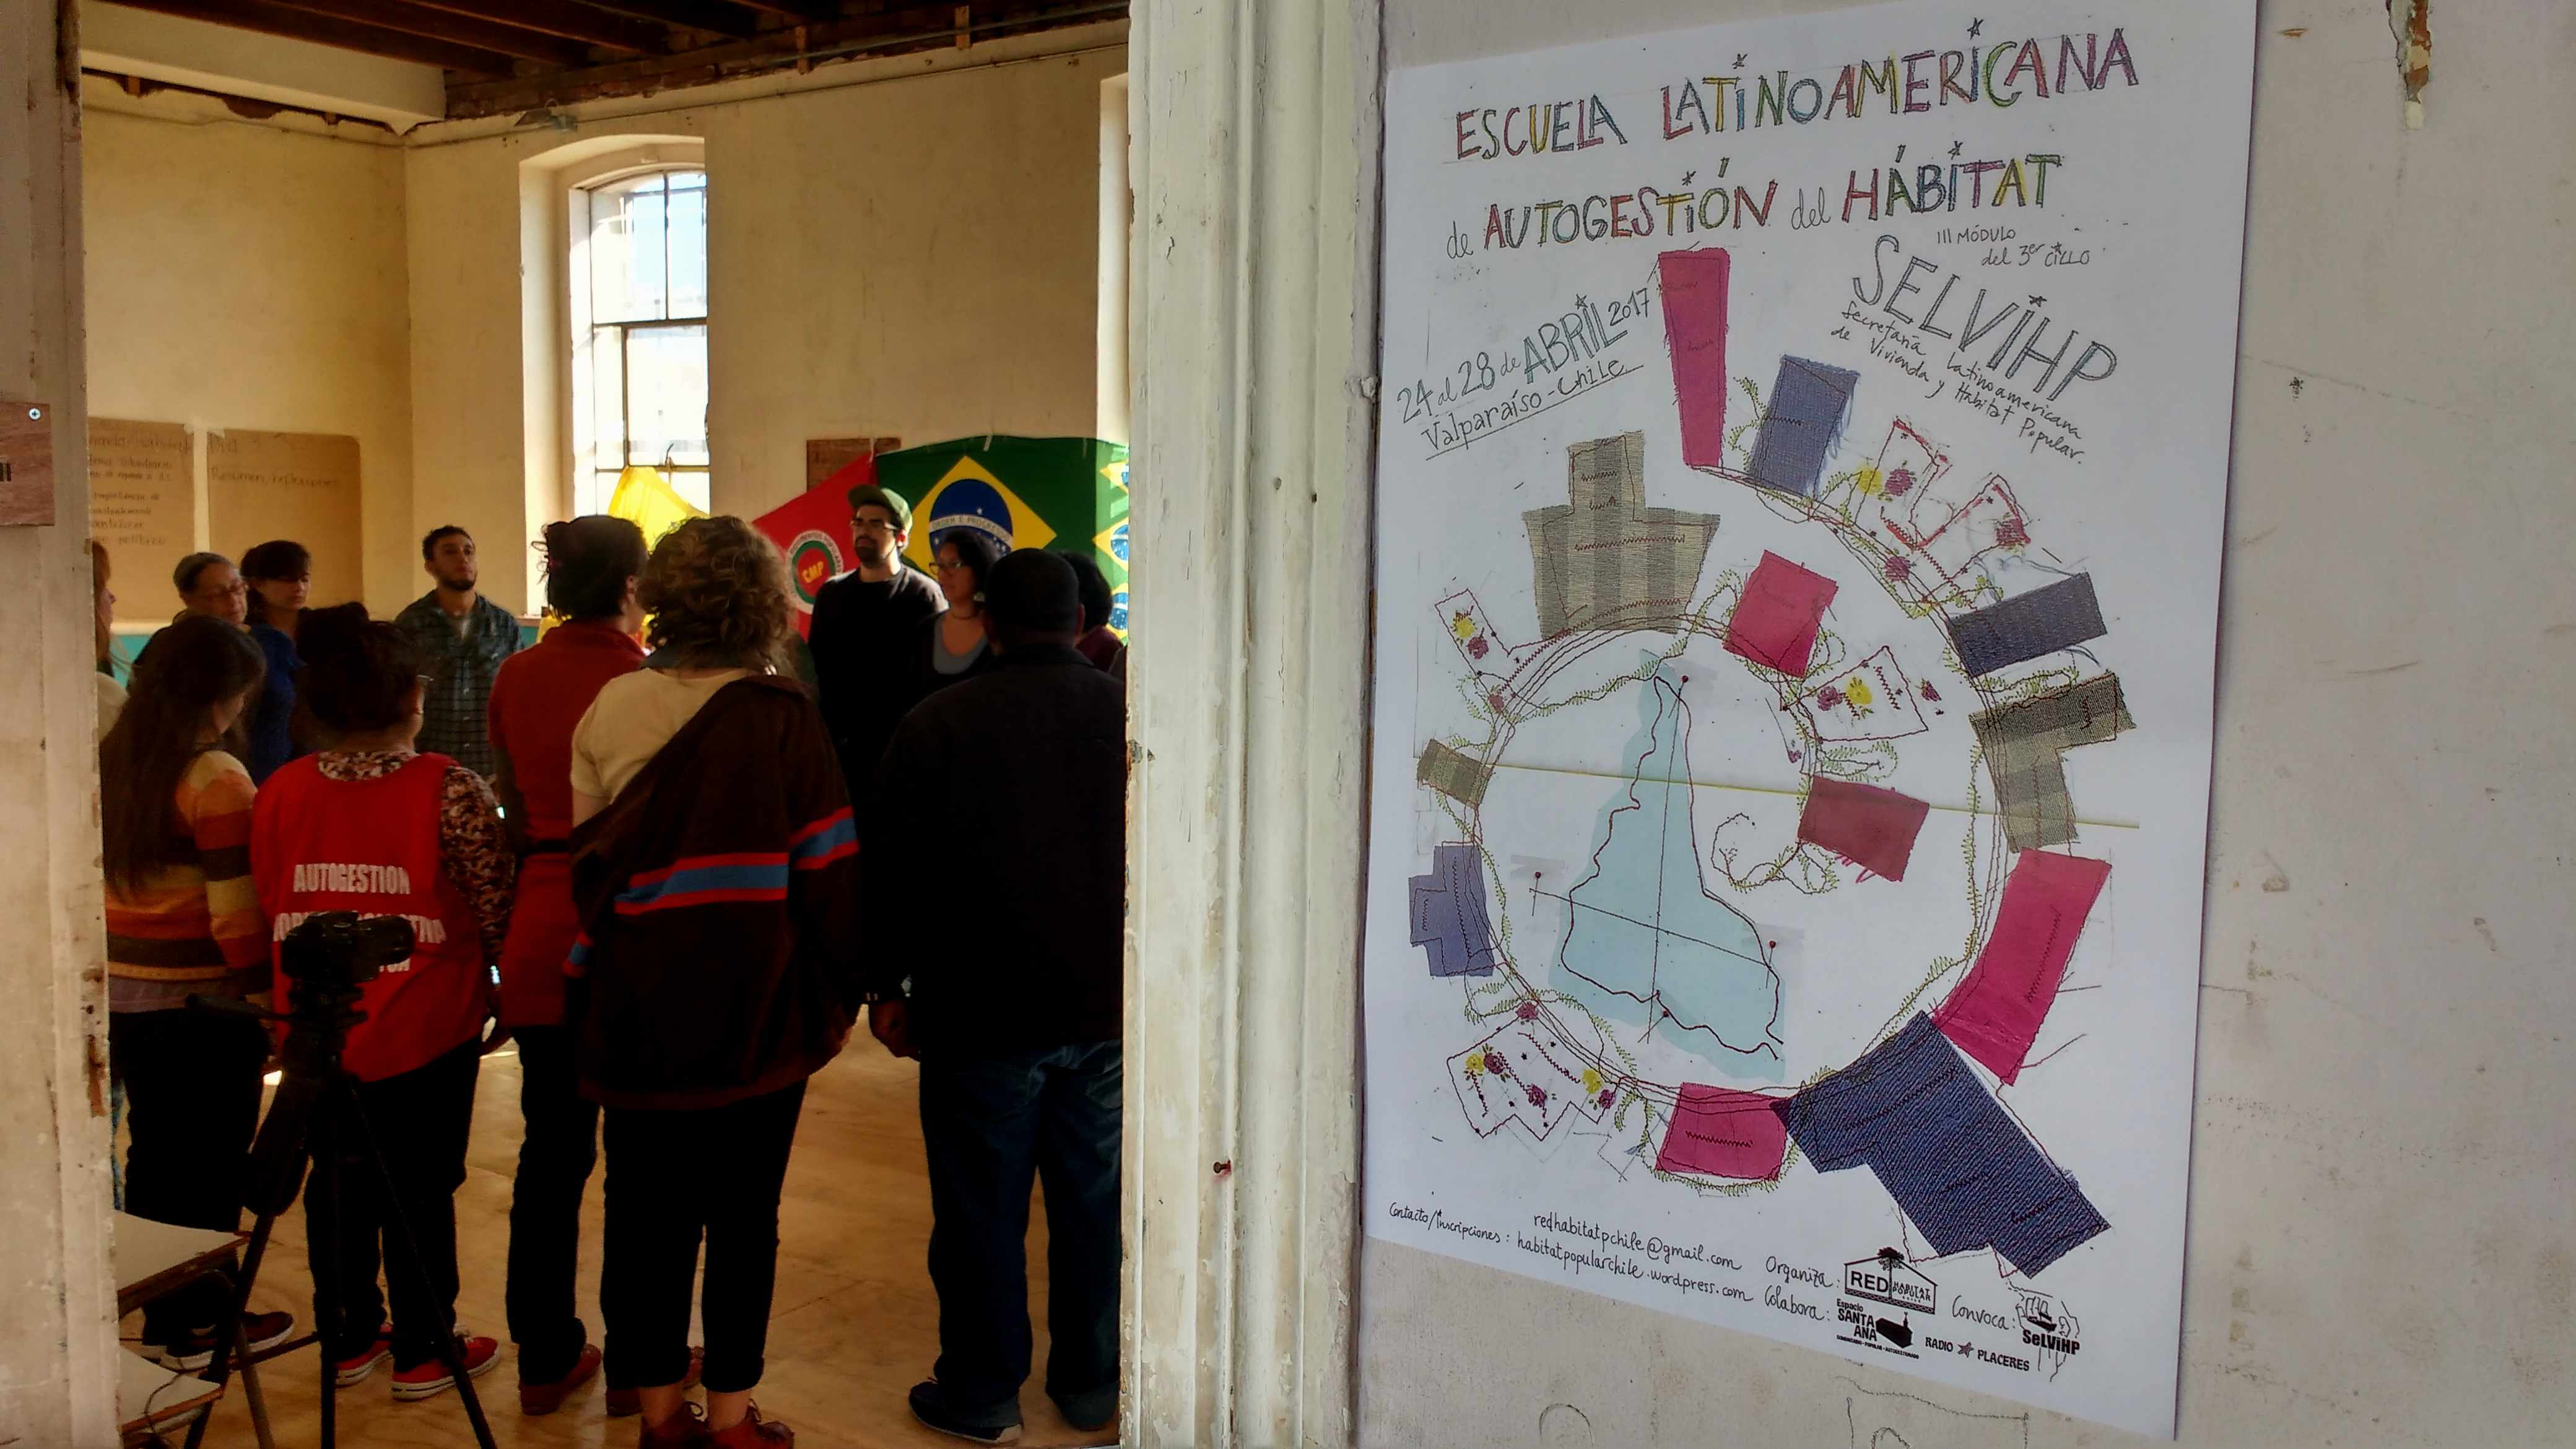 Valparaíso: entre cerros y escaleras se llevó a cabo potente escuela latinoamericana de autogestión